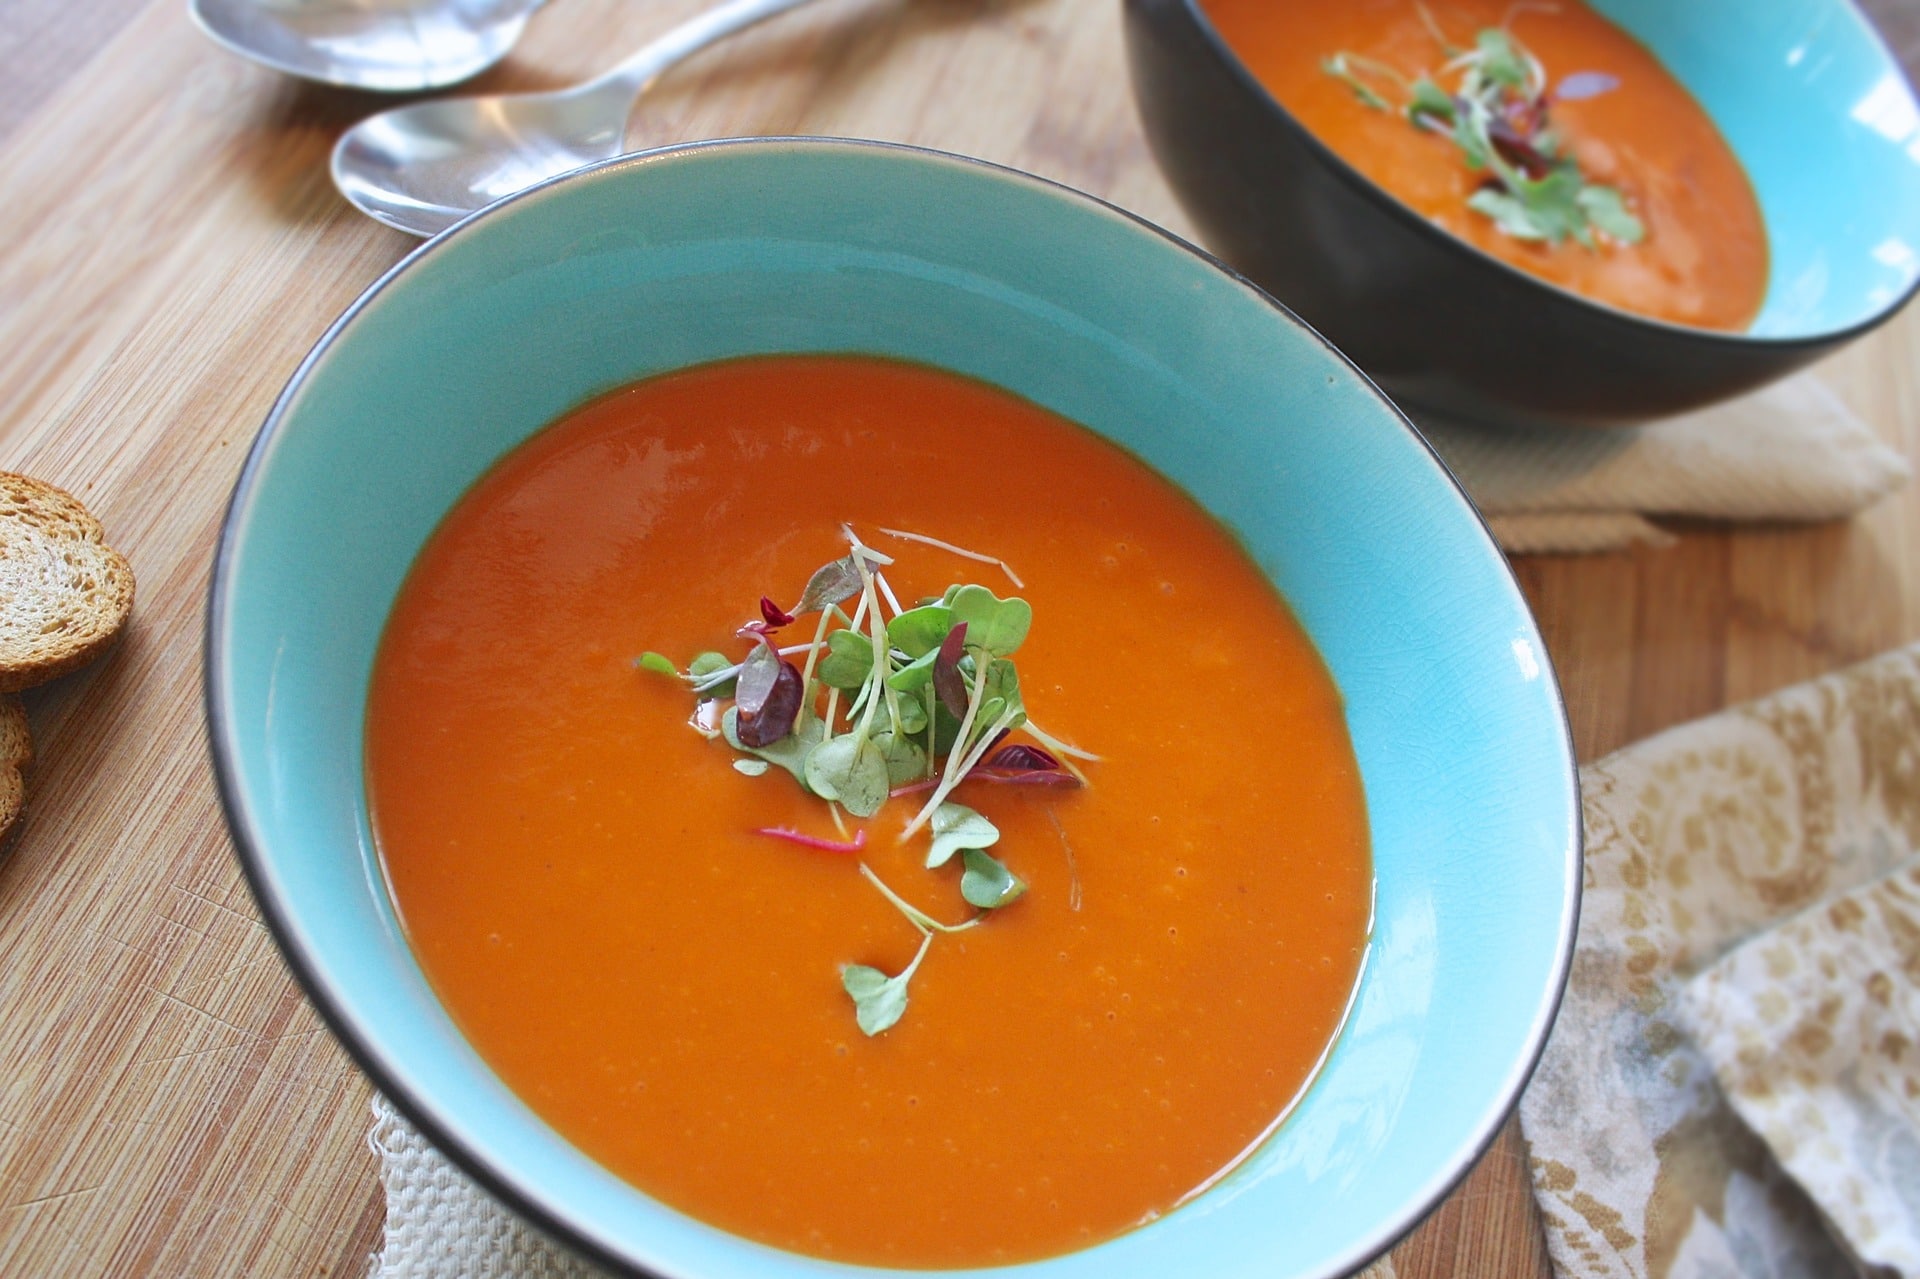 Zeleninová polévka obsahuje jen minimum kalorií / foto: pixabay.com